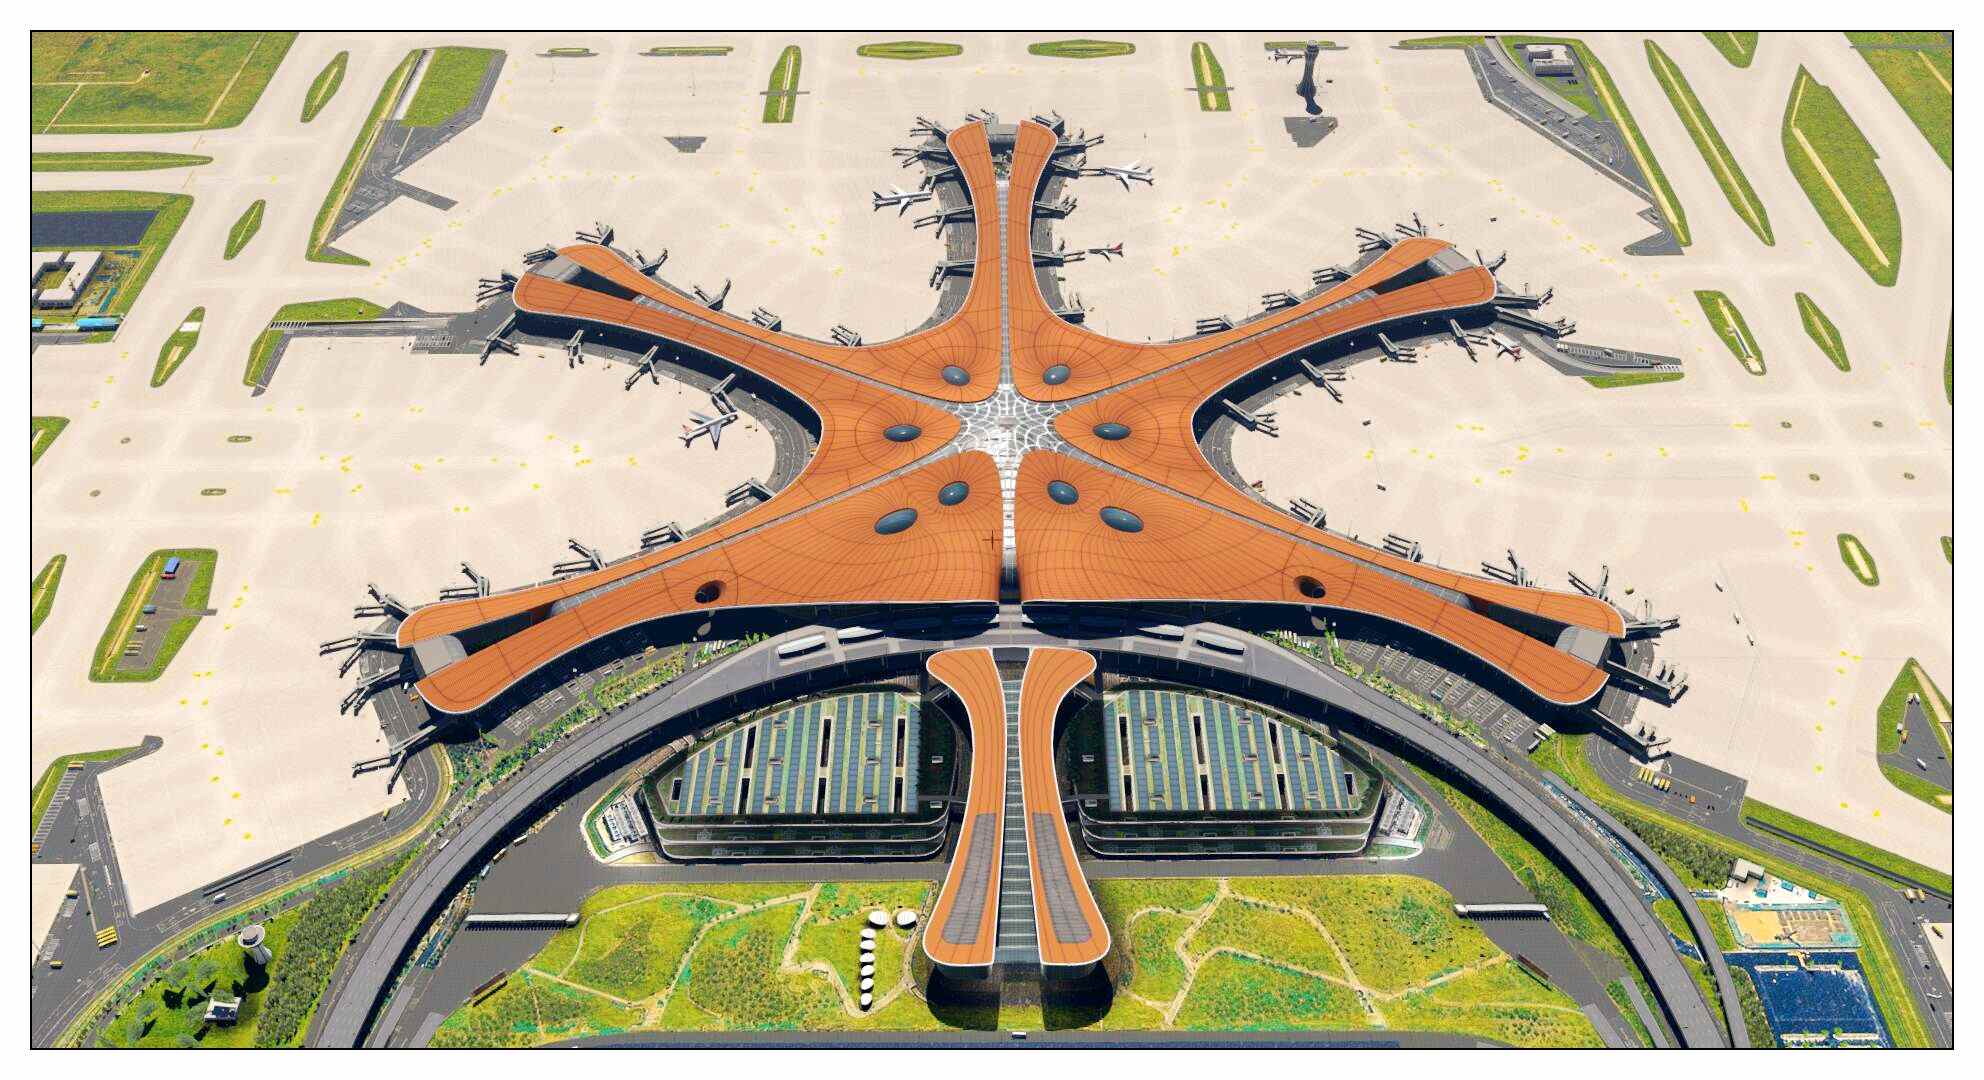 【X-Plane】ZBAD北京大兴国际机场-正式发布-8701 